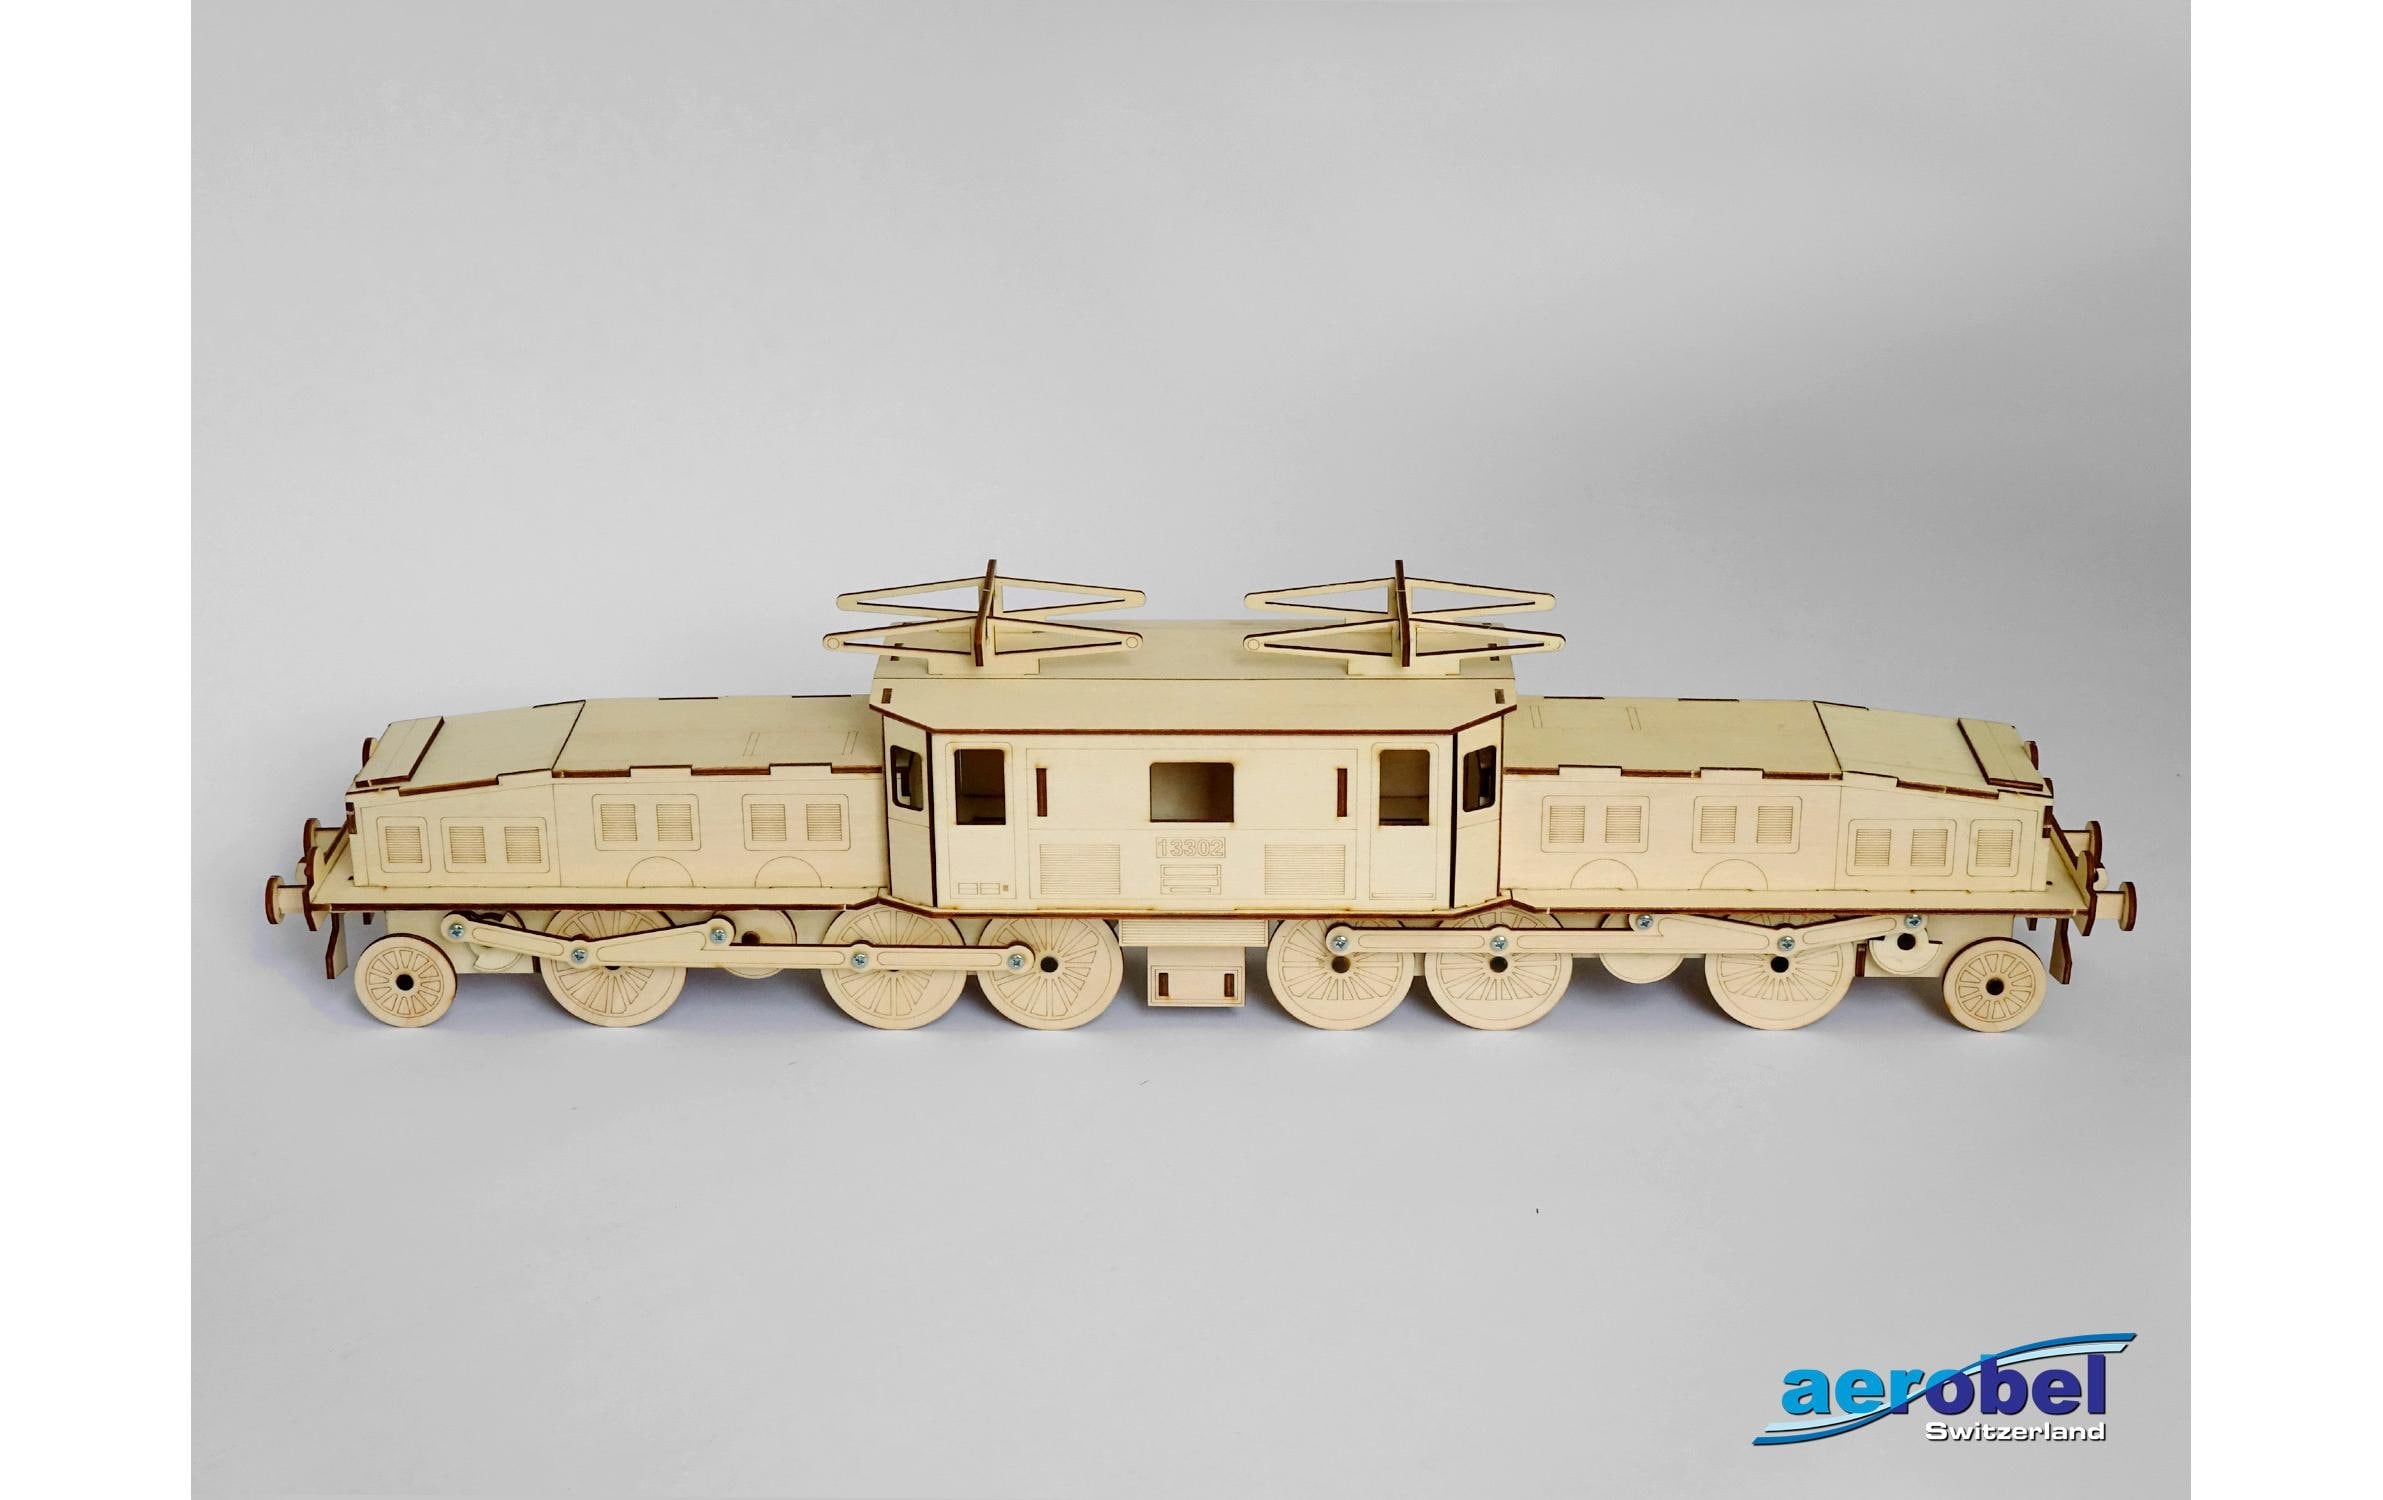 Modellbausatz »Aerobel Krokodil SBB Lokomotive«